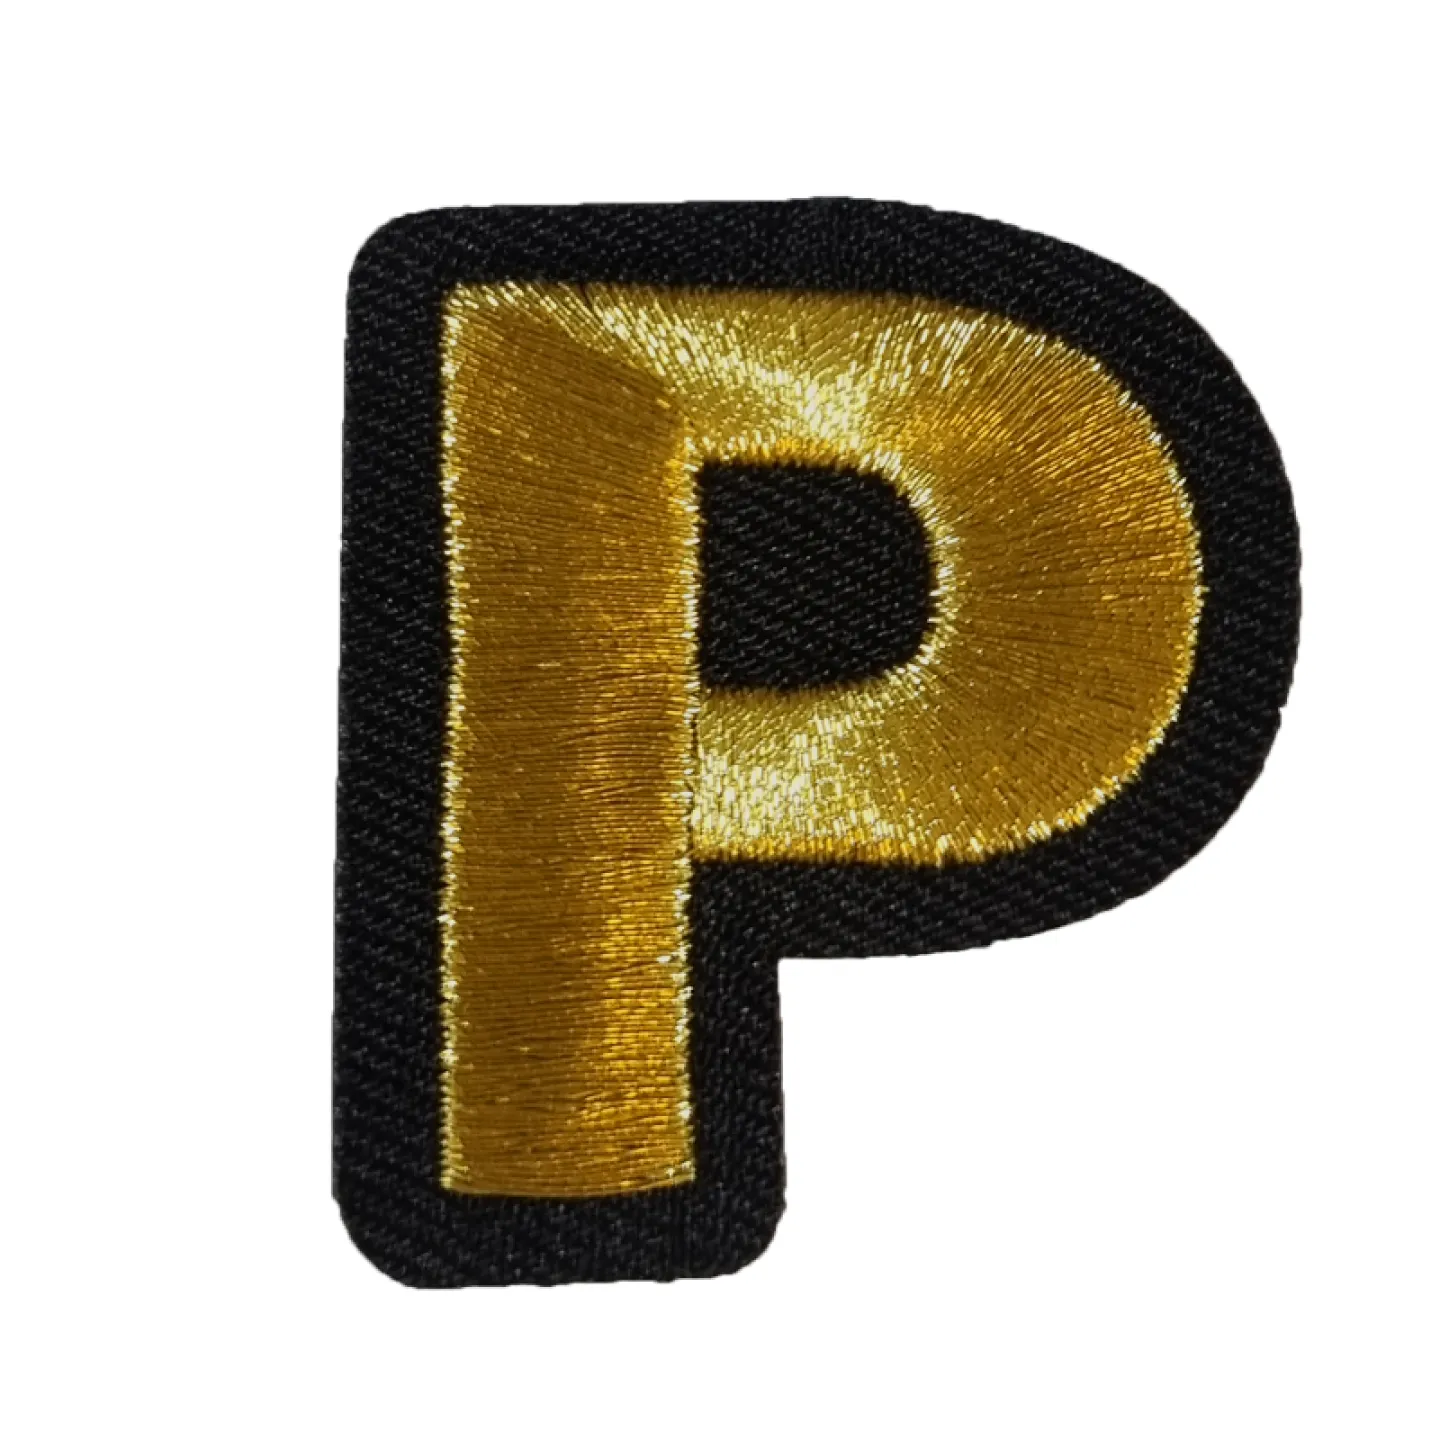 Kruikenstad embleem gouden letter P goedkoop.